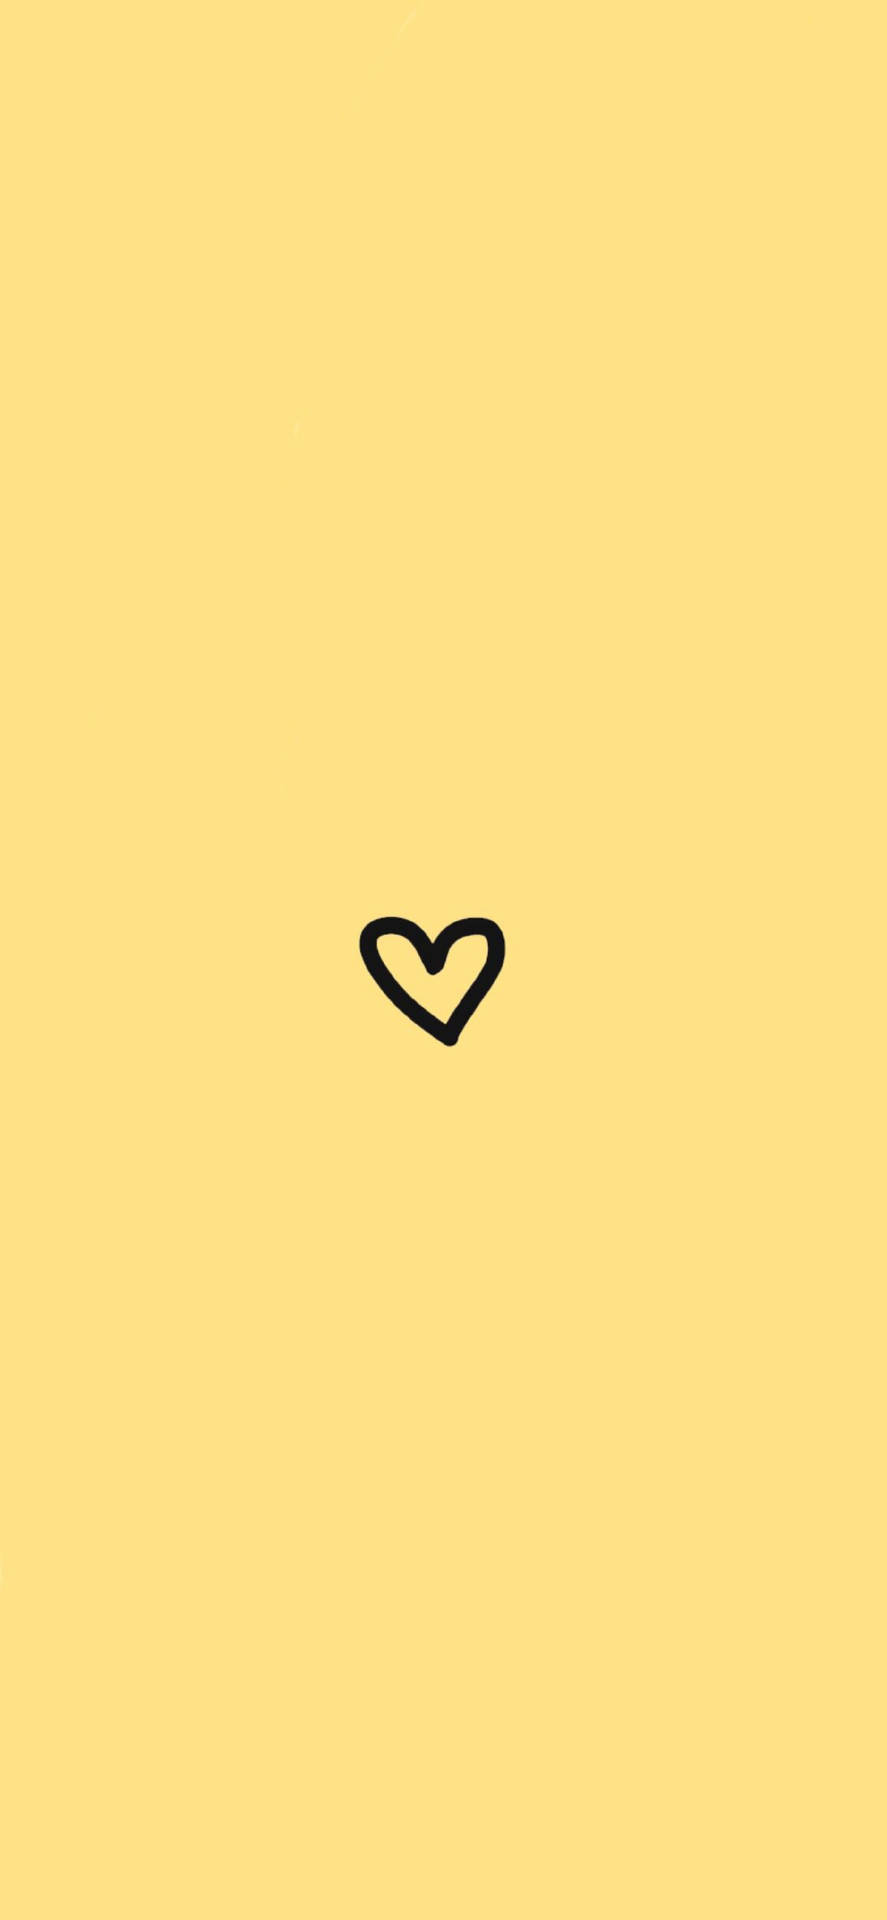 Perfilde Instagram Minimalista Con Corazón Amarillo Fondo de pantalla